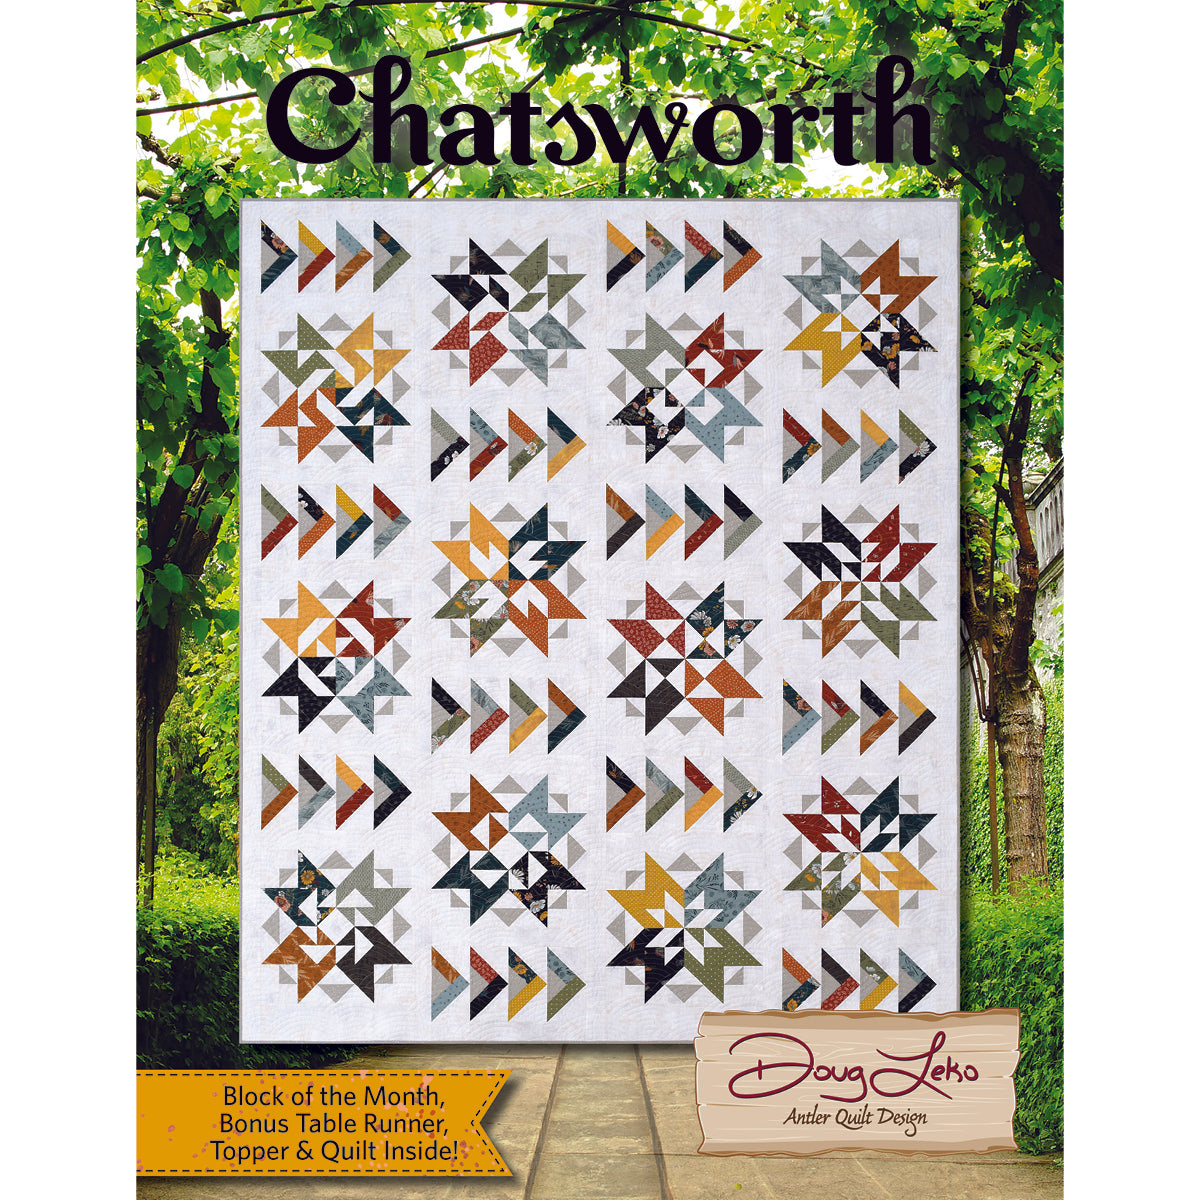 Chatsworth - Antler Quilt Design, LLC.